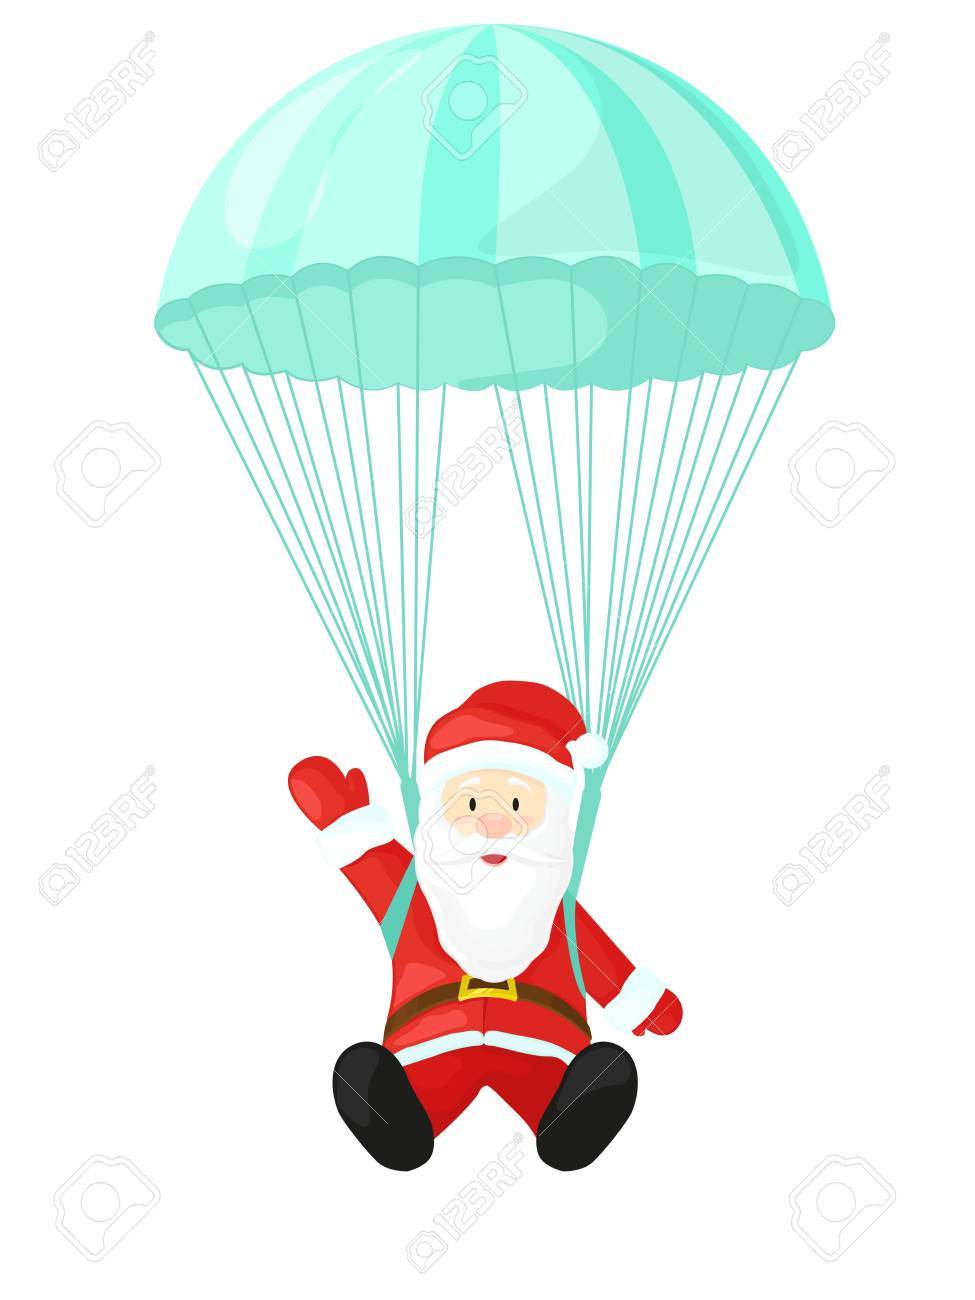 parachute clipart santa